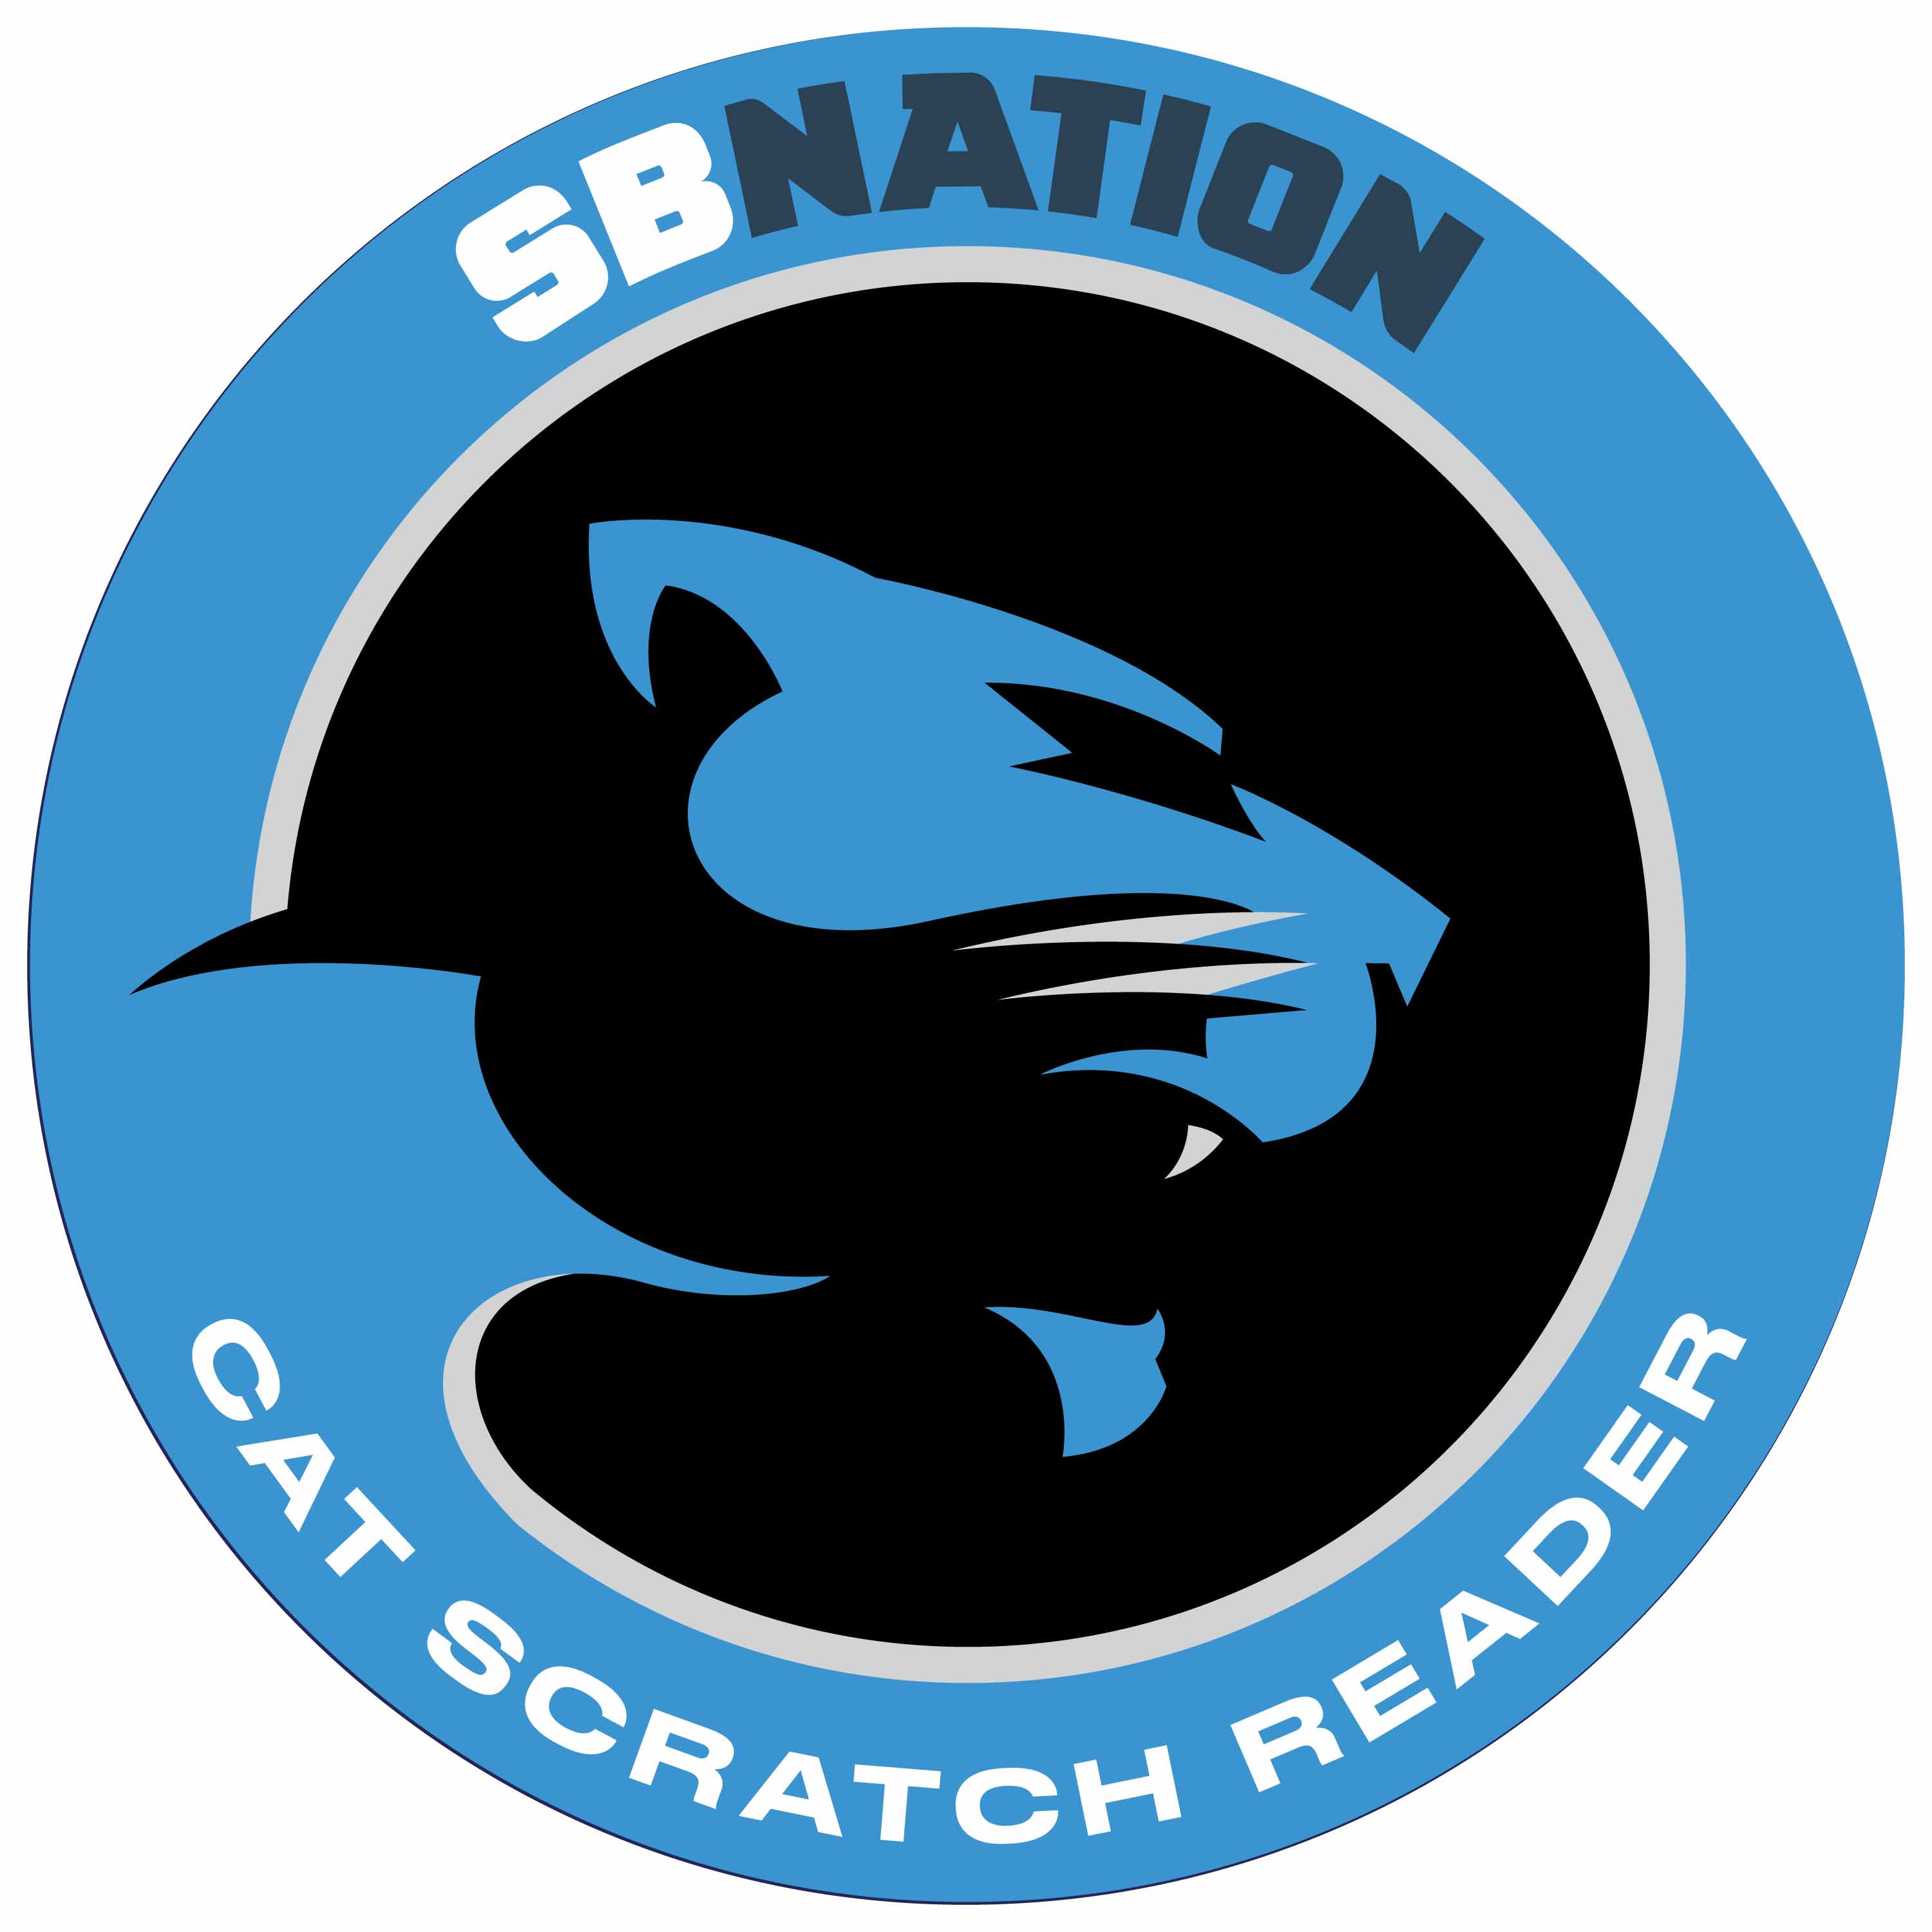 Cat Scratch Reader